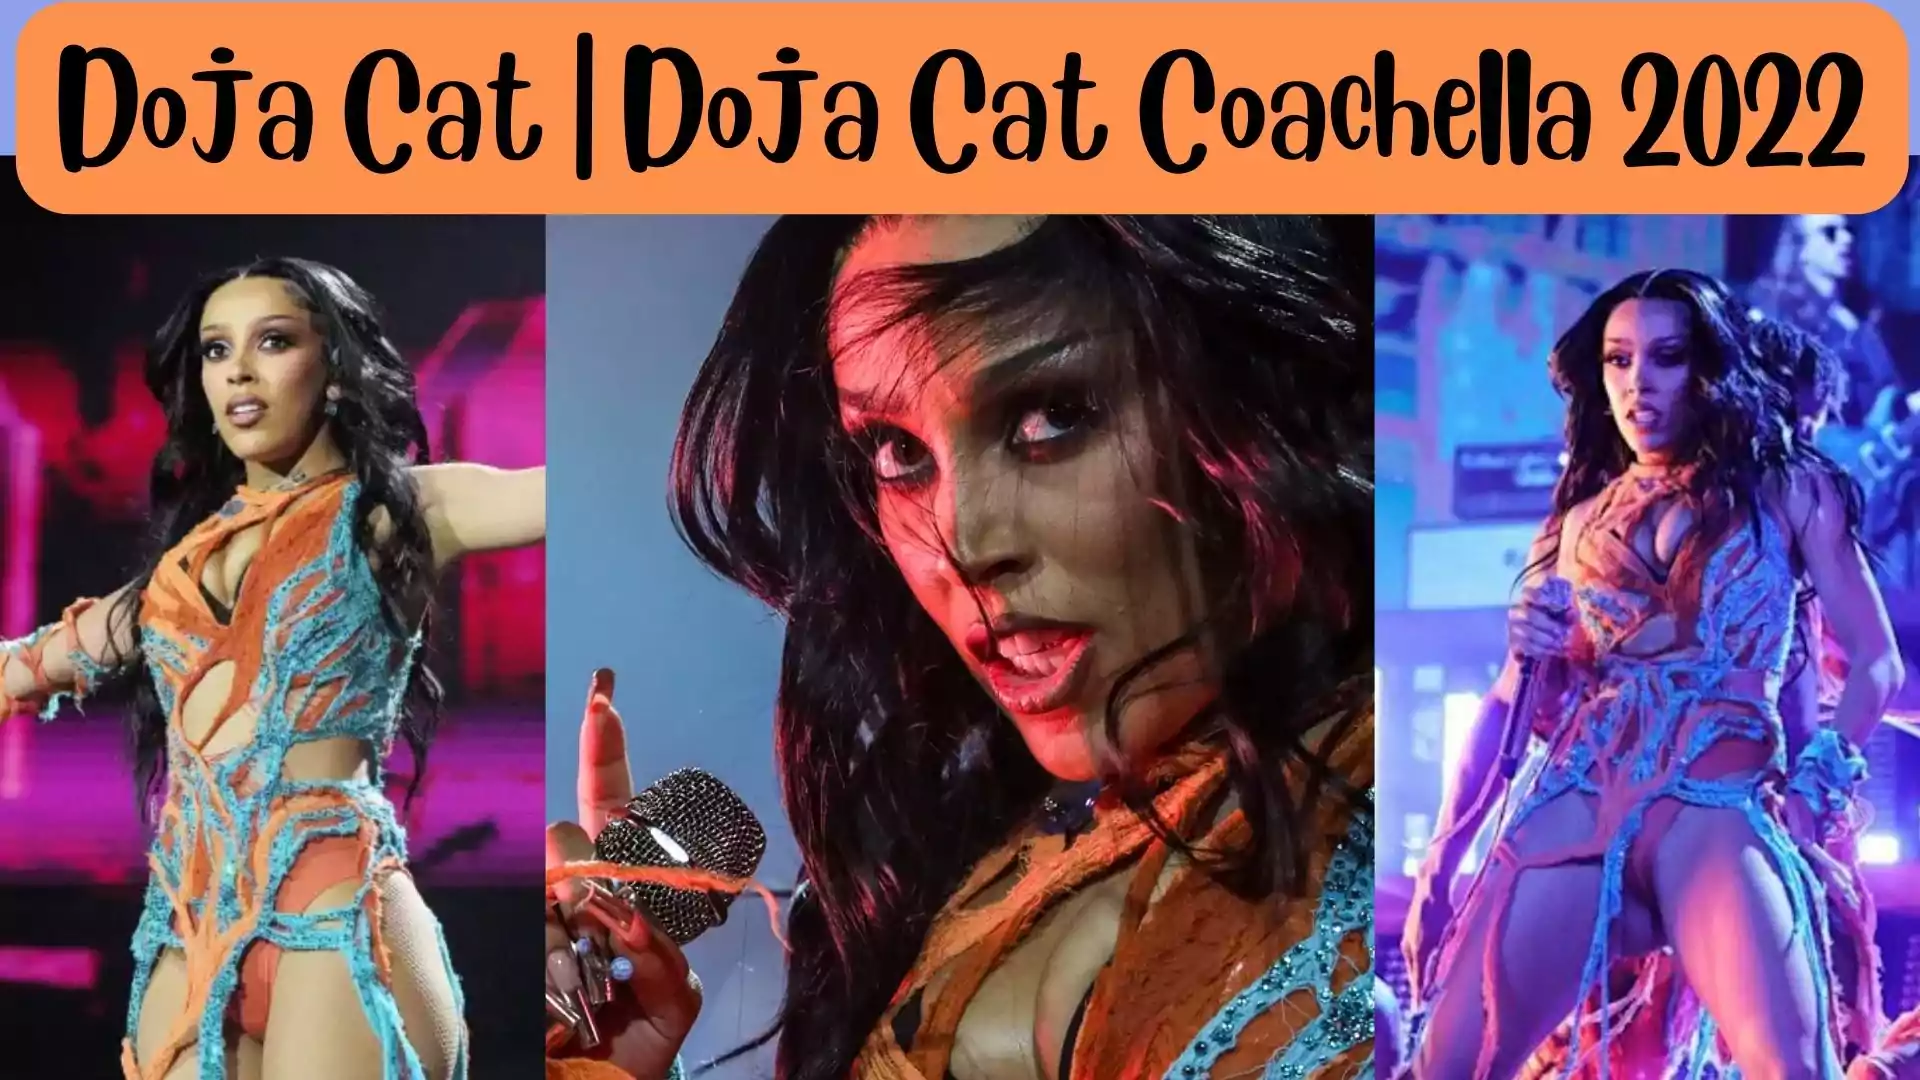 Doja Cat | Doja Cat Coachella 2022 wallpaper and images